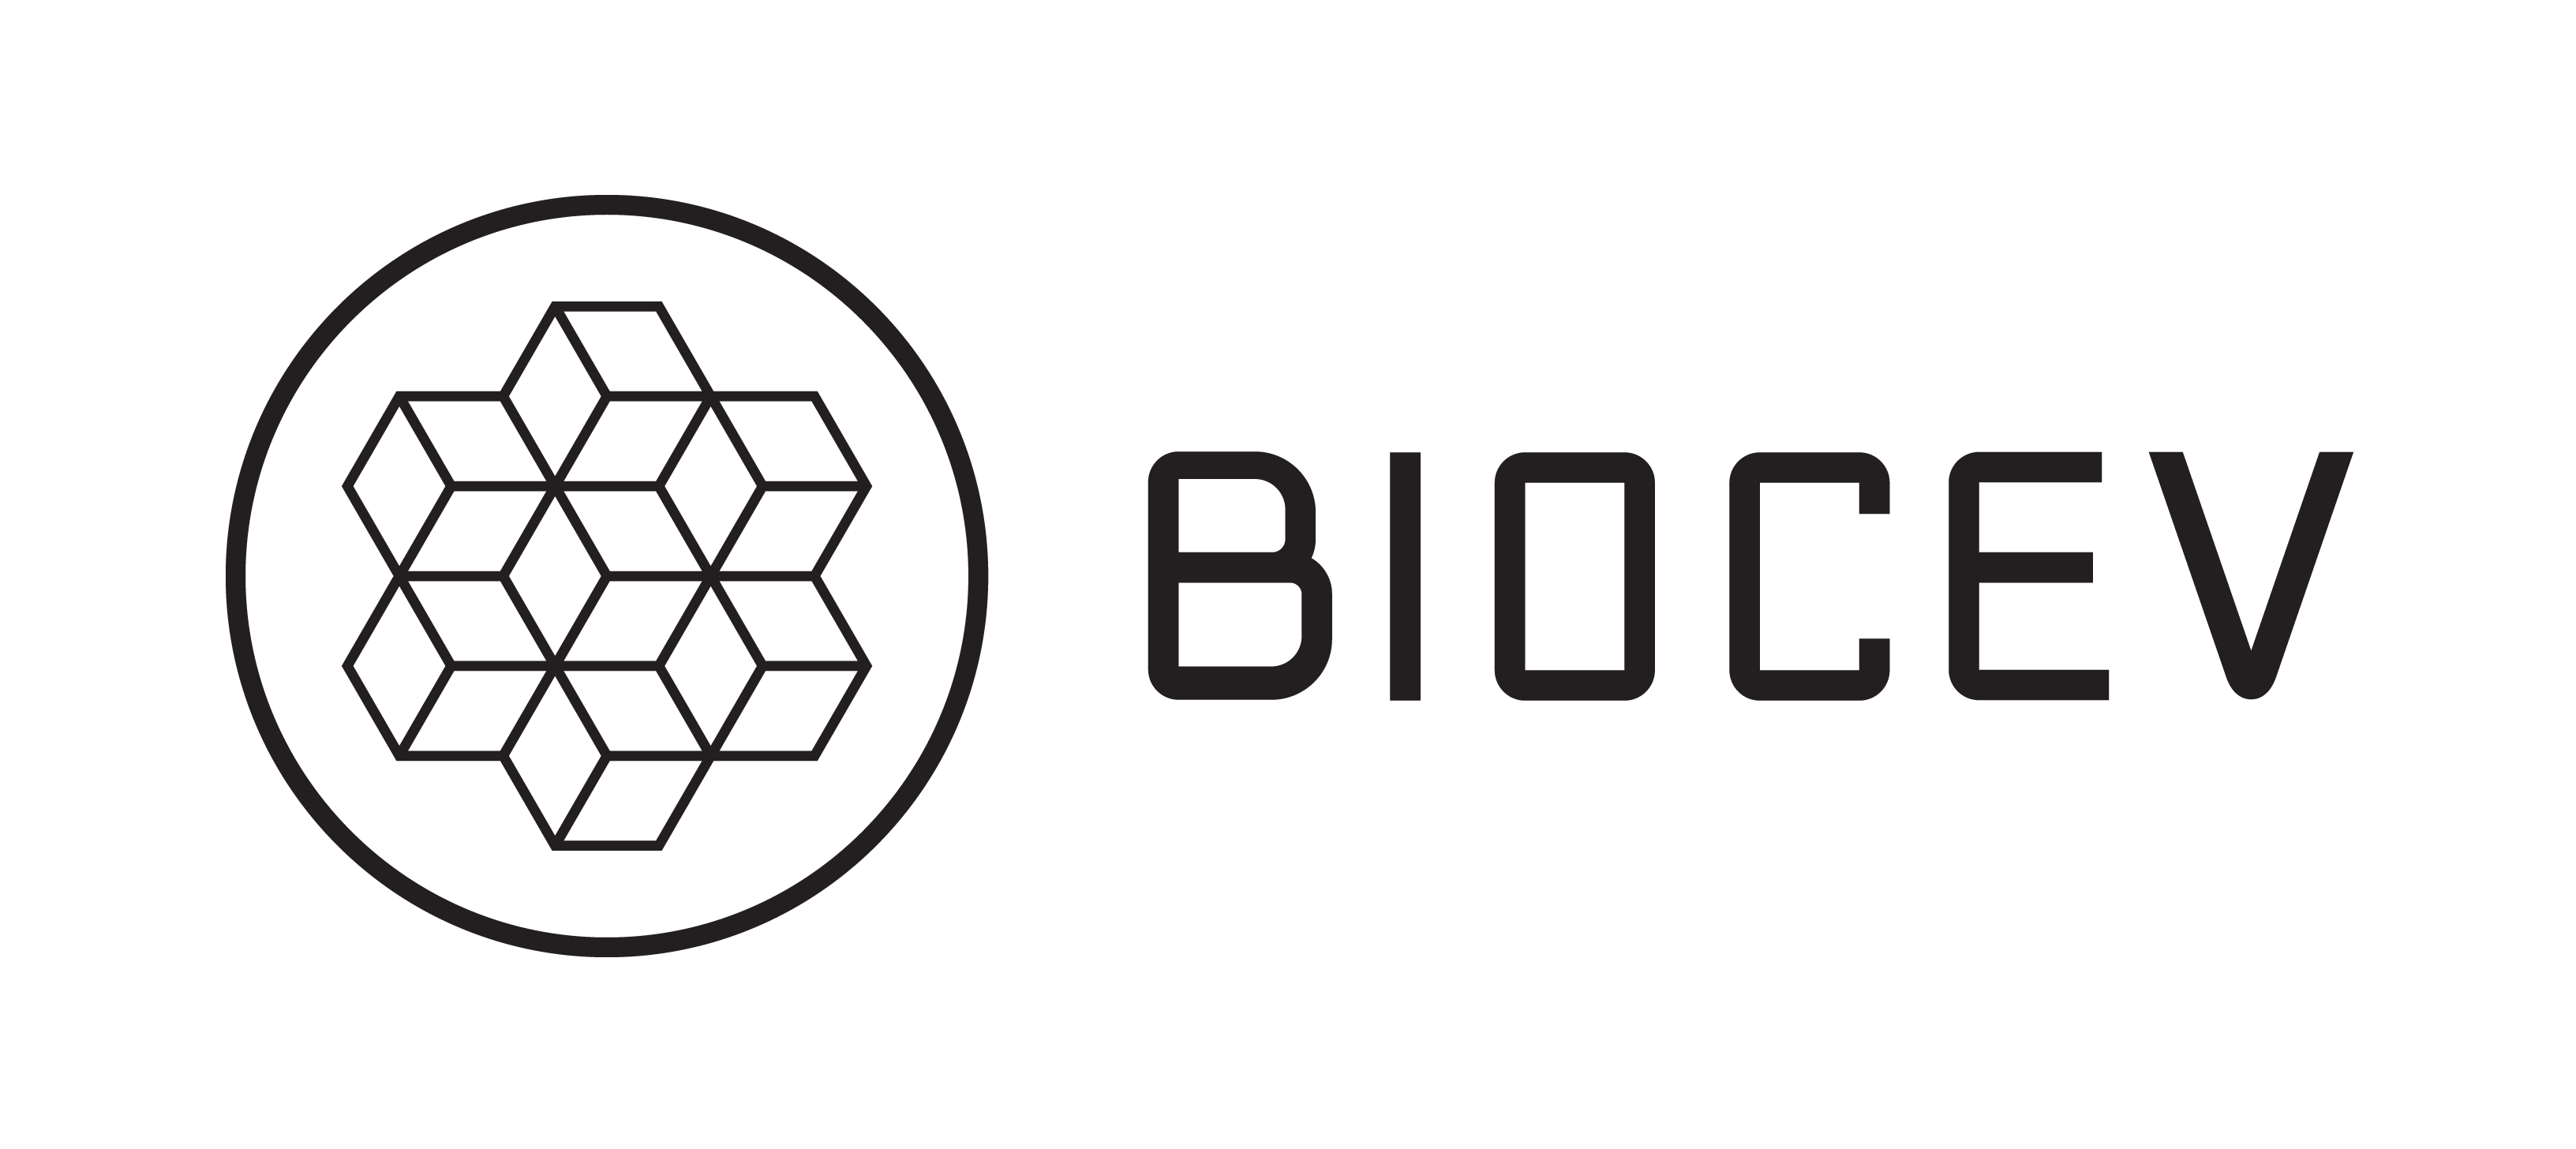 biocev-logo-black